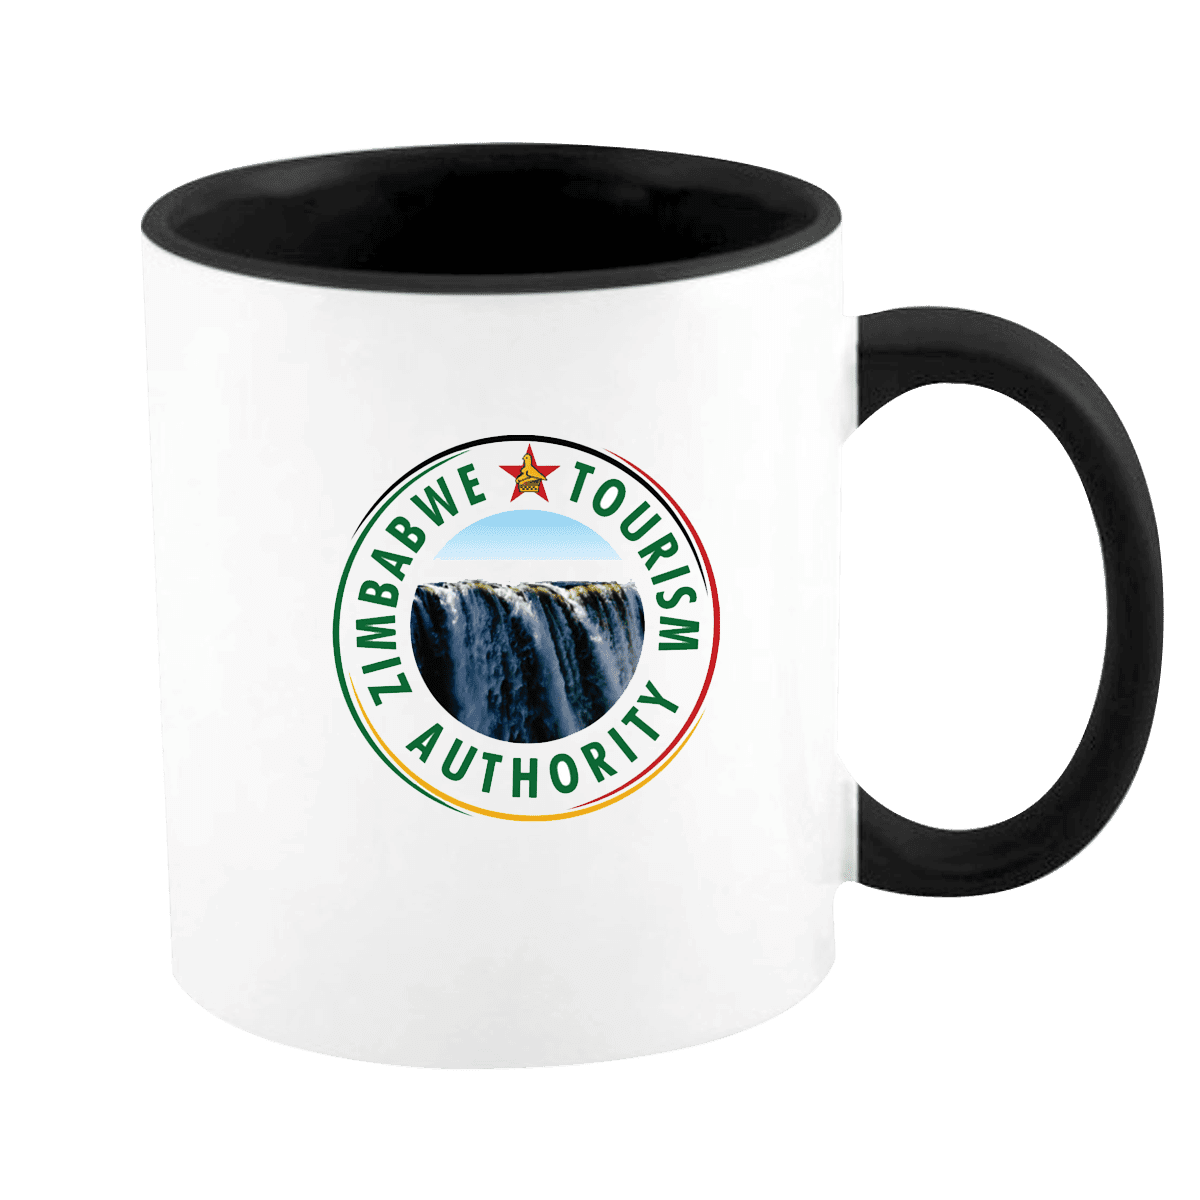 Branded mugs